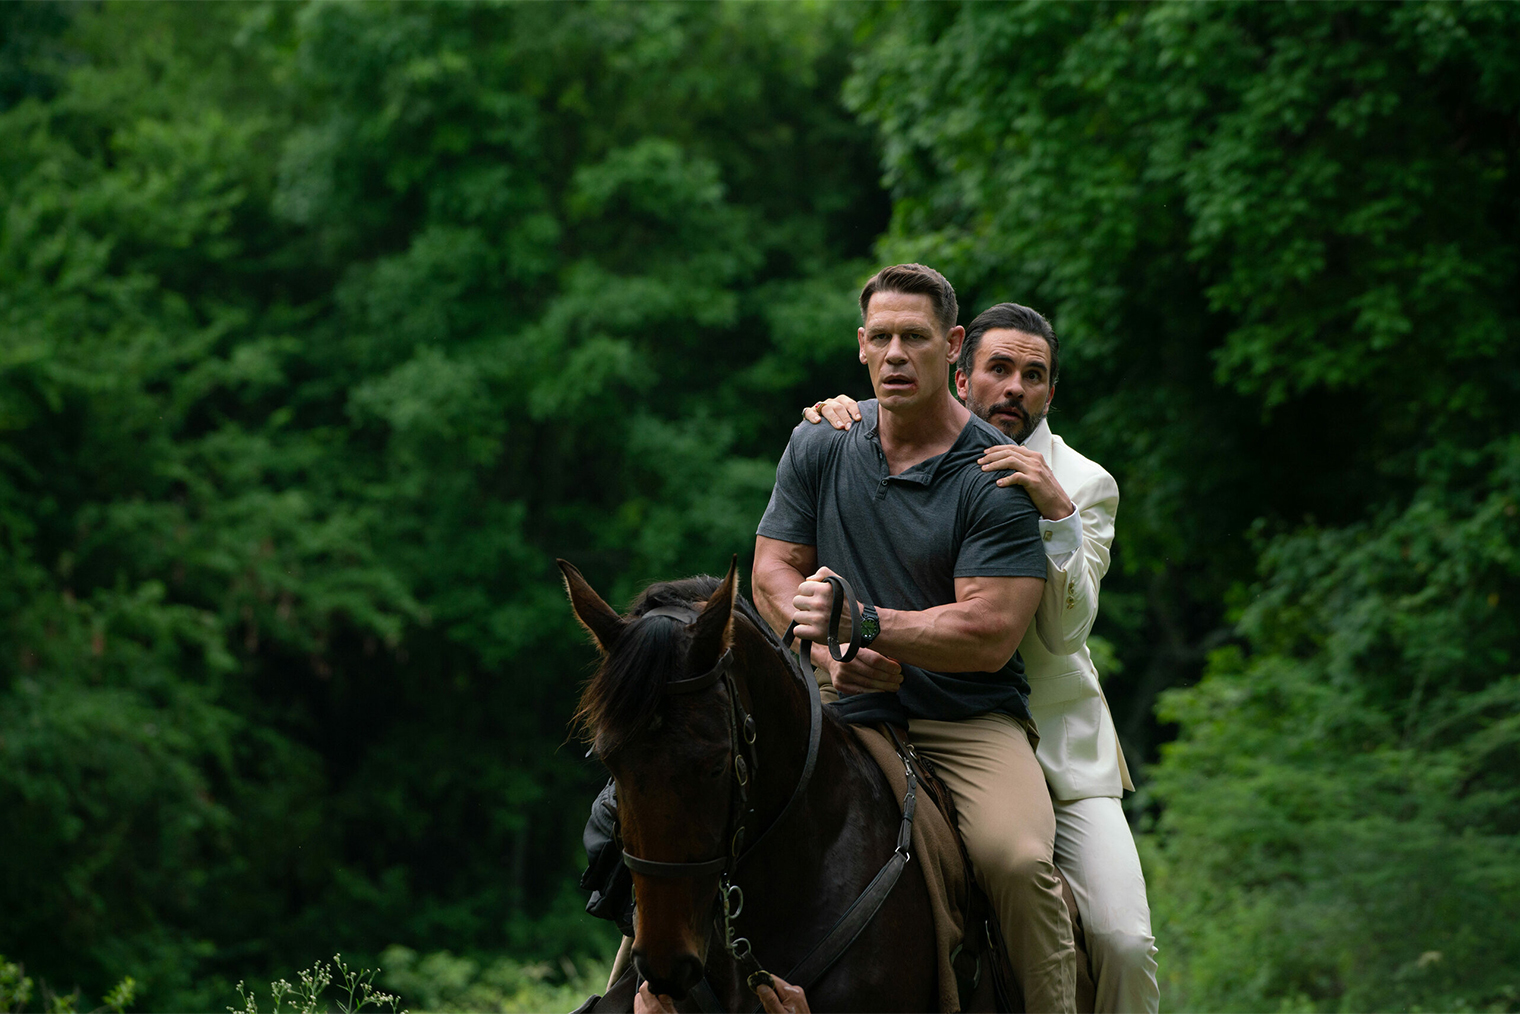 В фильме Джон Сина нереалистично быстро мчит от преступников на лошади. Его не могут догнать даже джипы